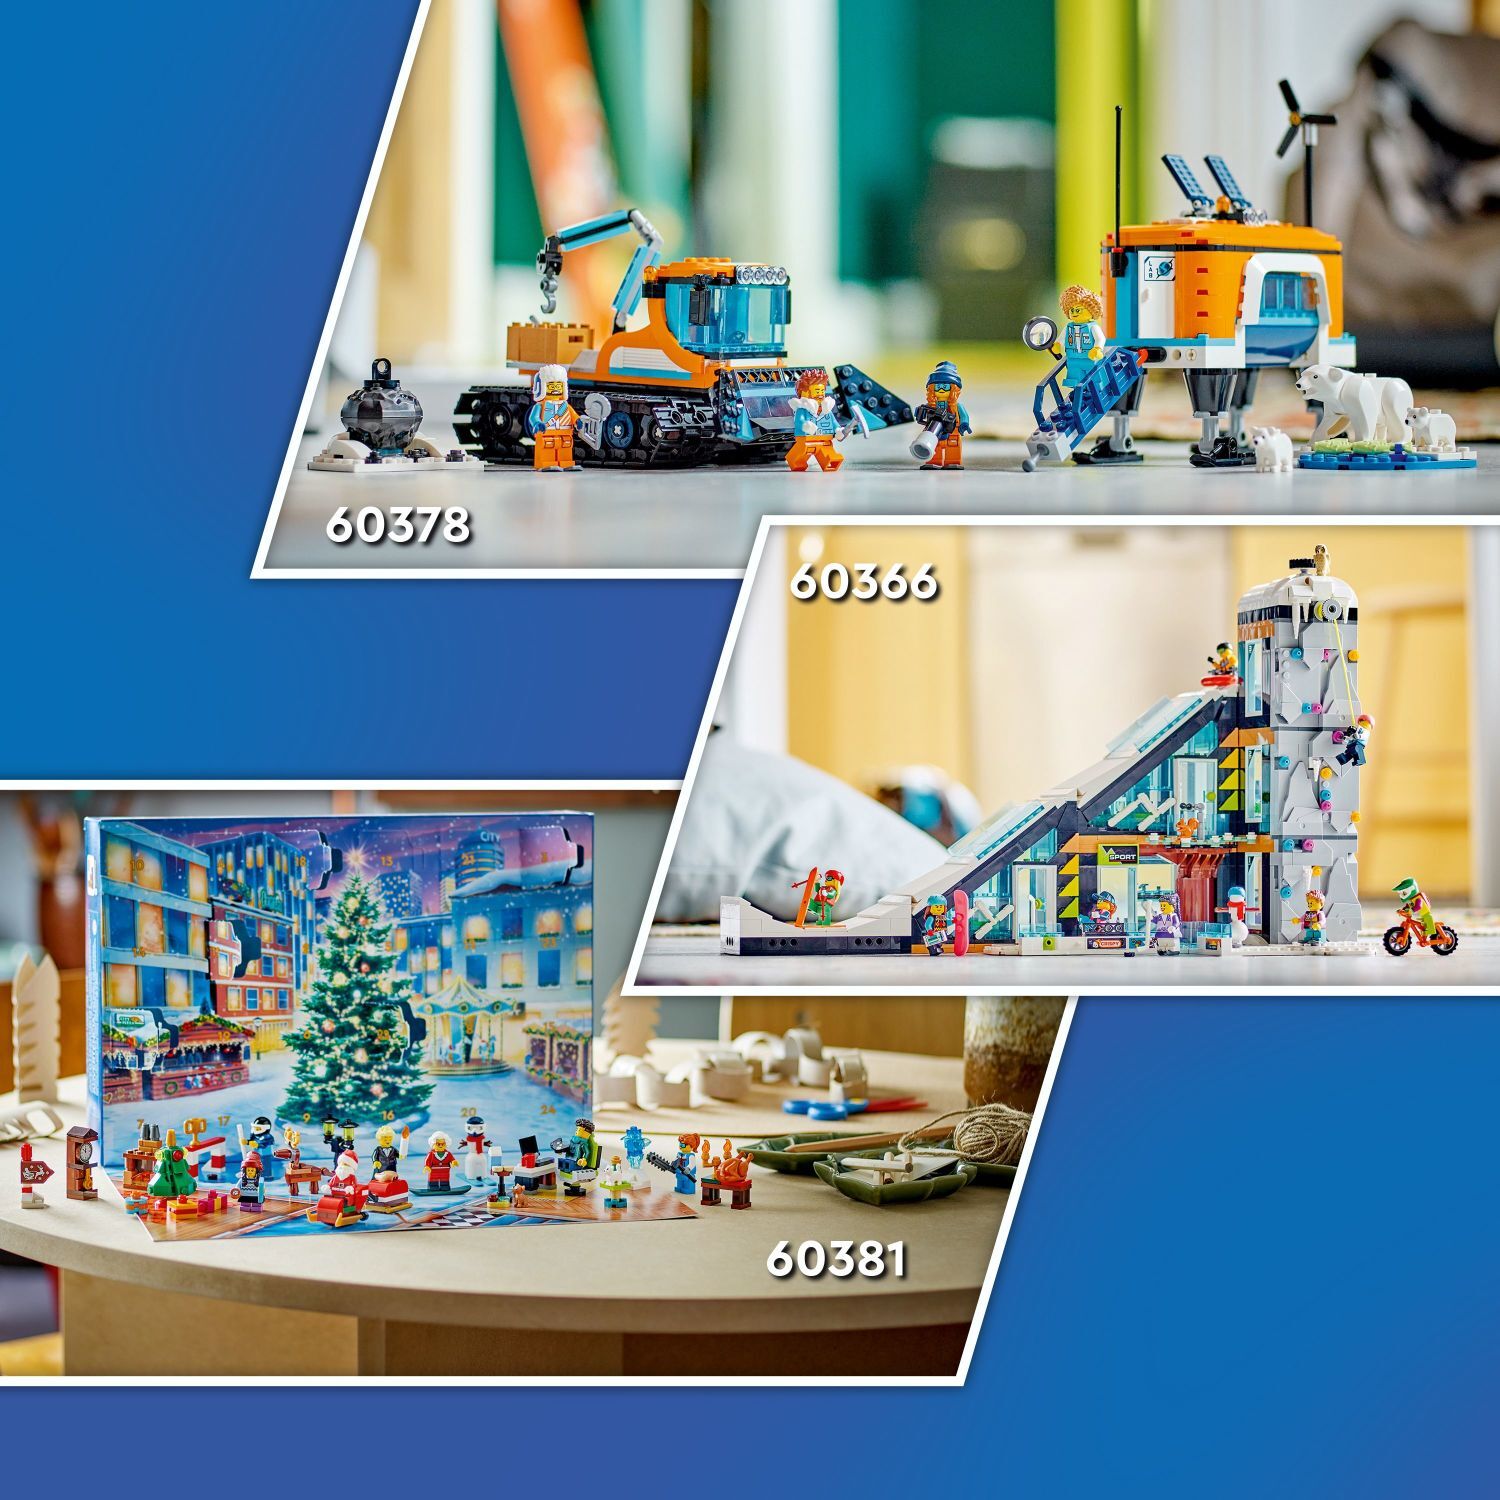 LEGO® City Occasions: Advent Calendar 2023